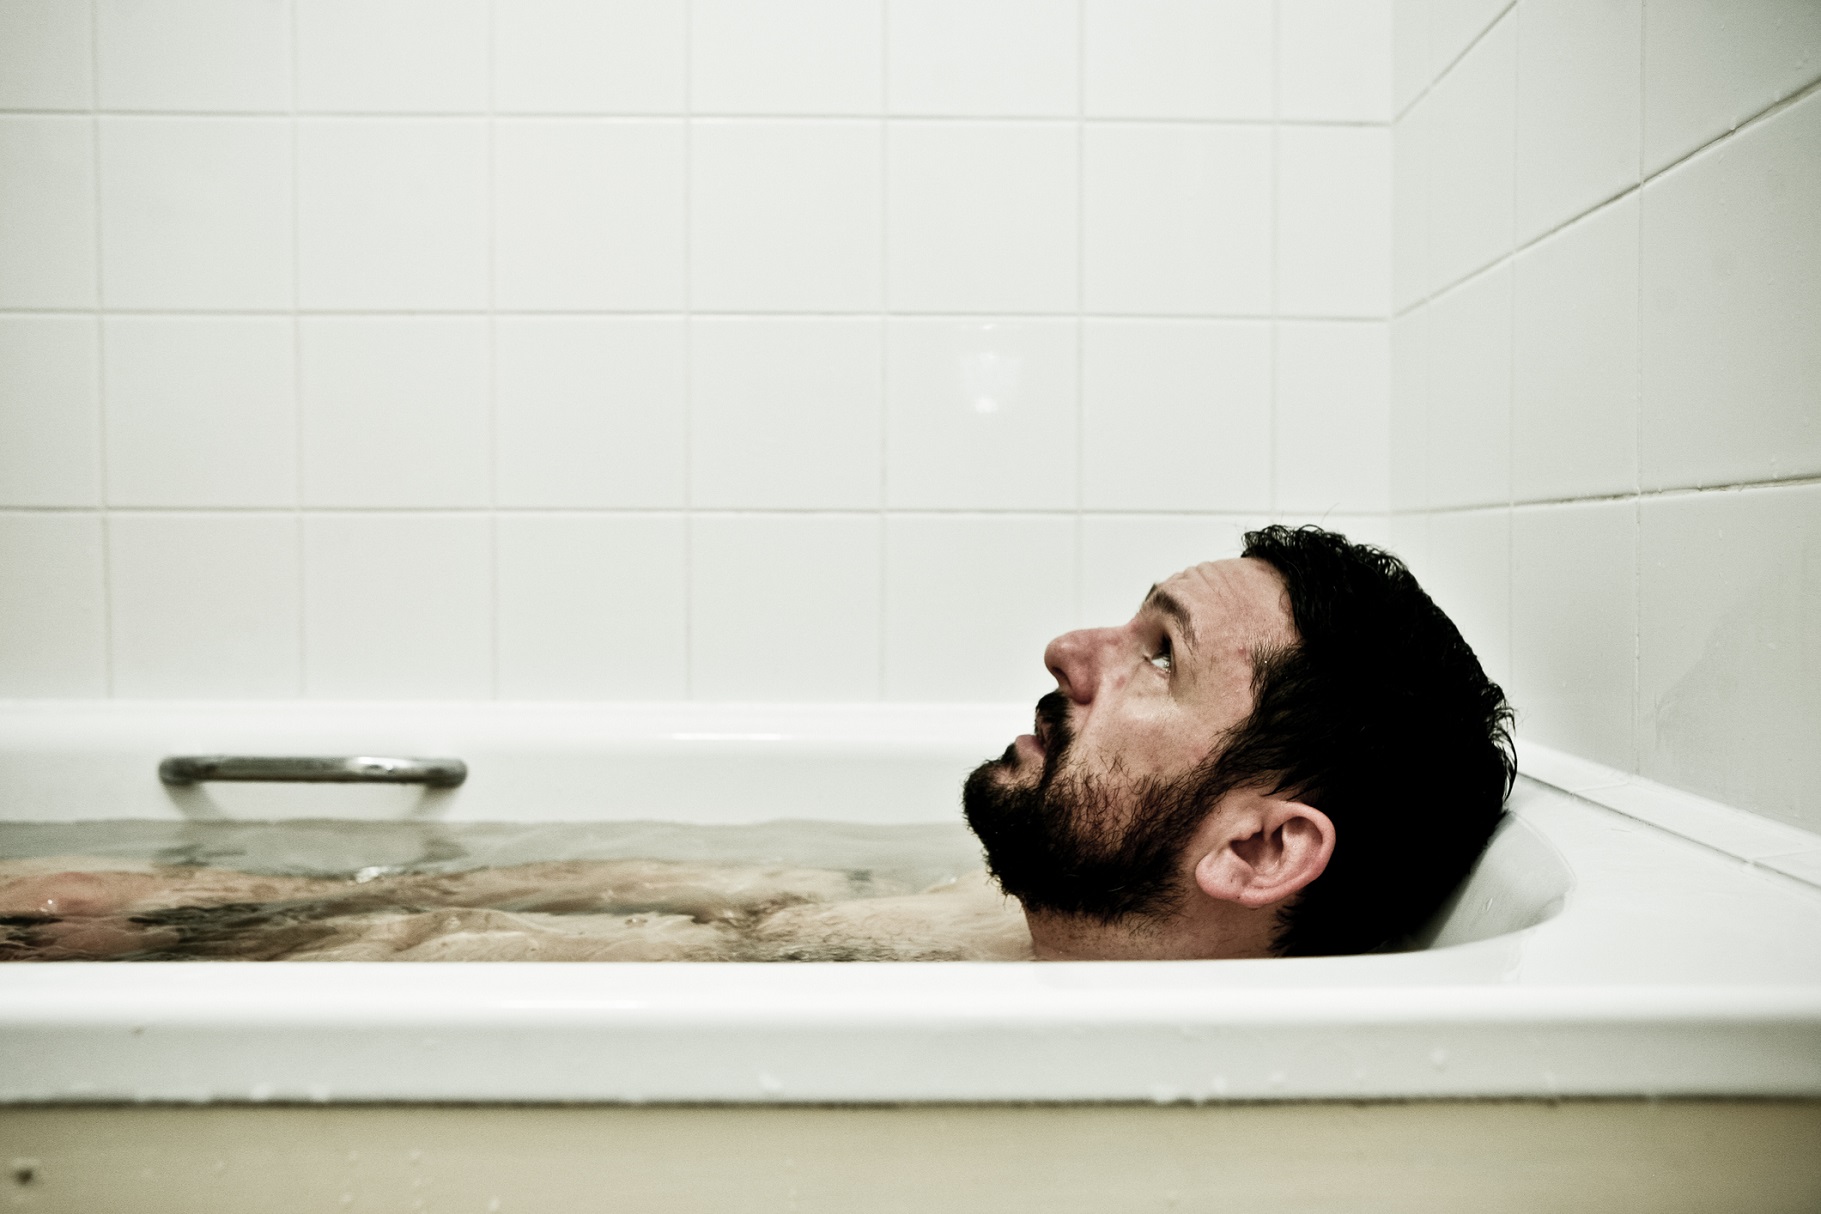 疲れがとれるお風呂の入り方とは。ポイントは「ぬるめの温度」と「寝る2時間前」 | 健康×スポーツ『MELOS』